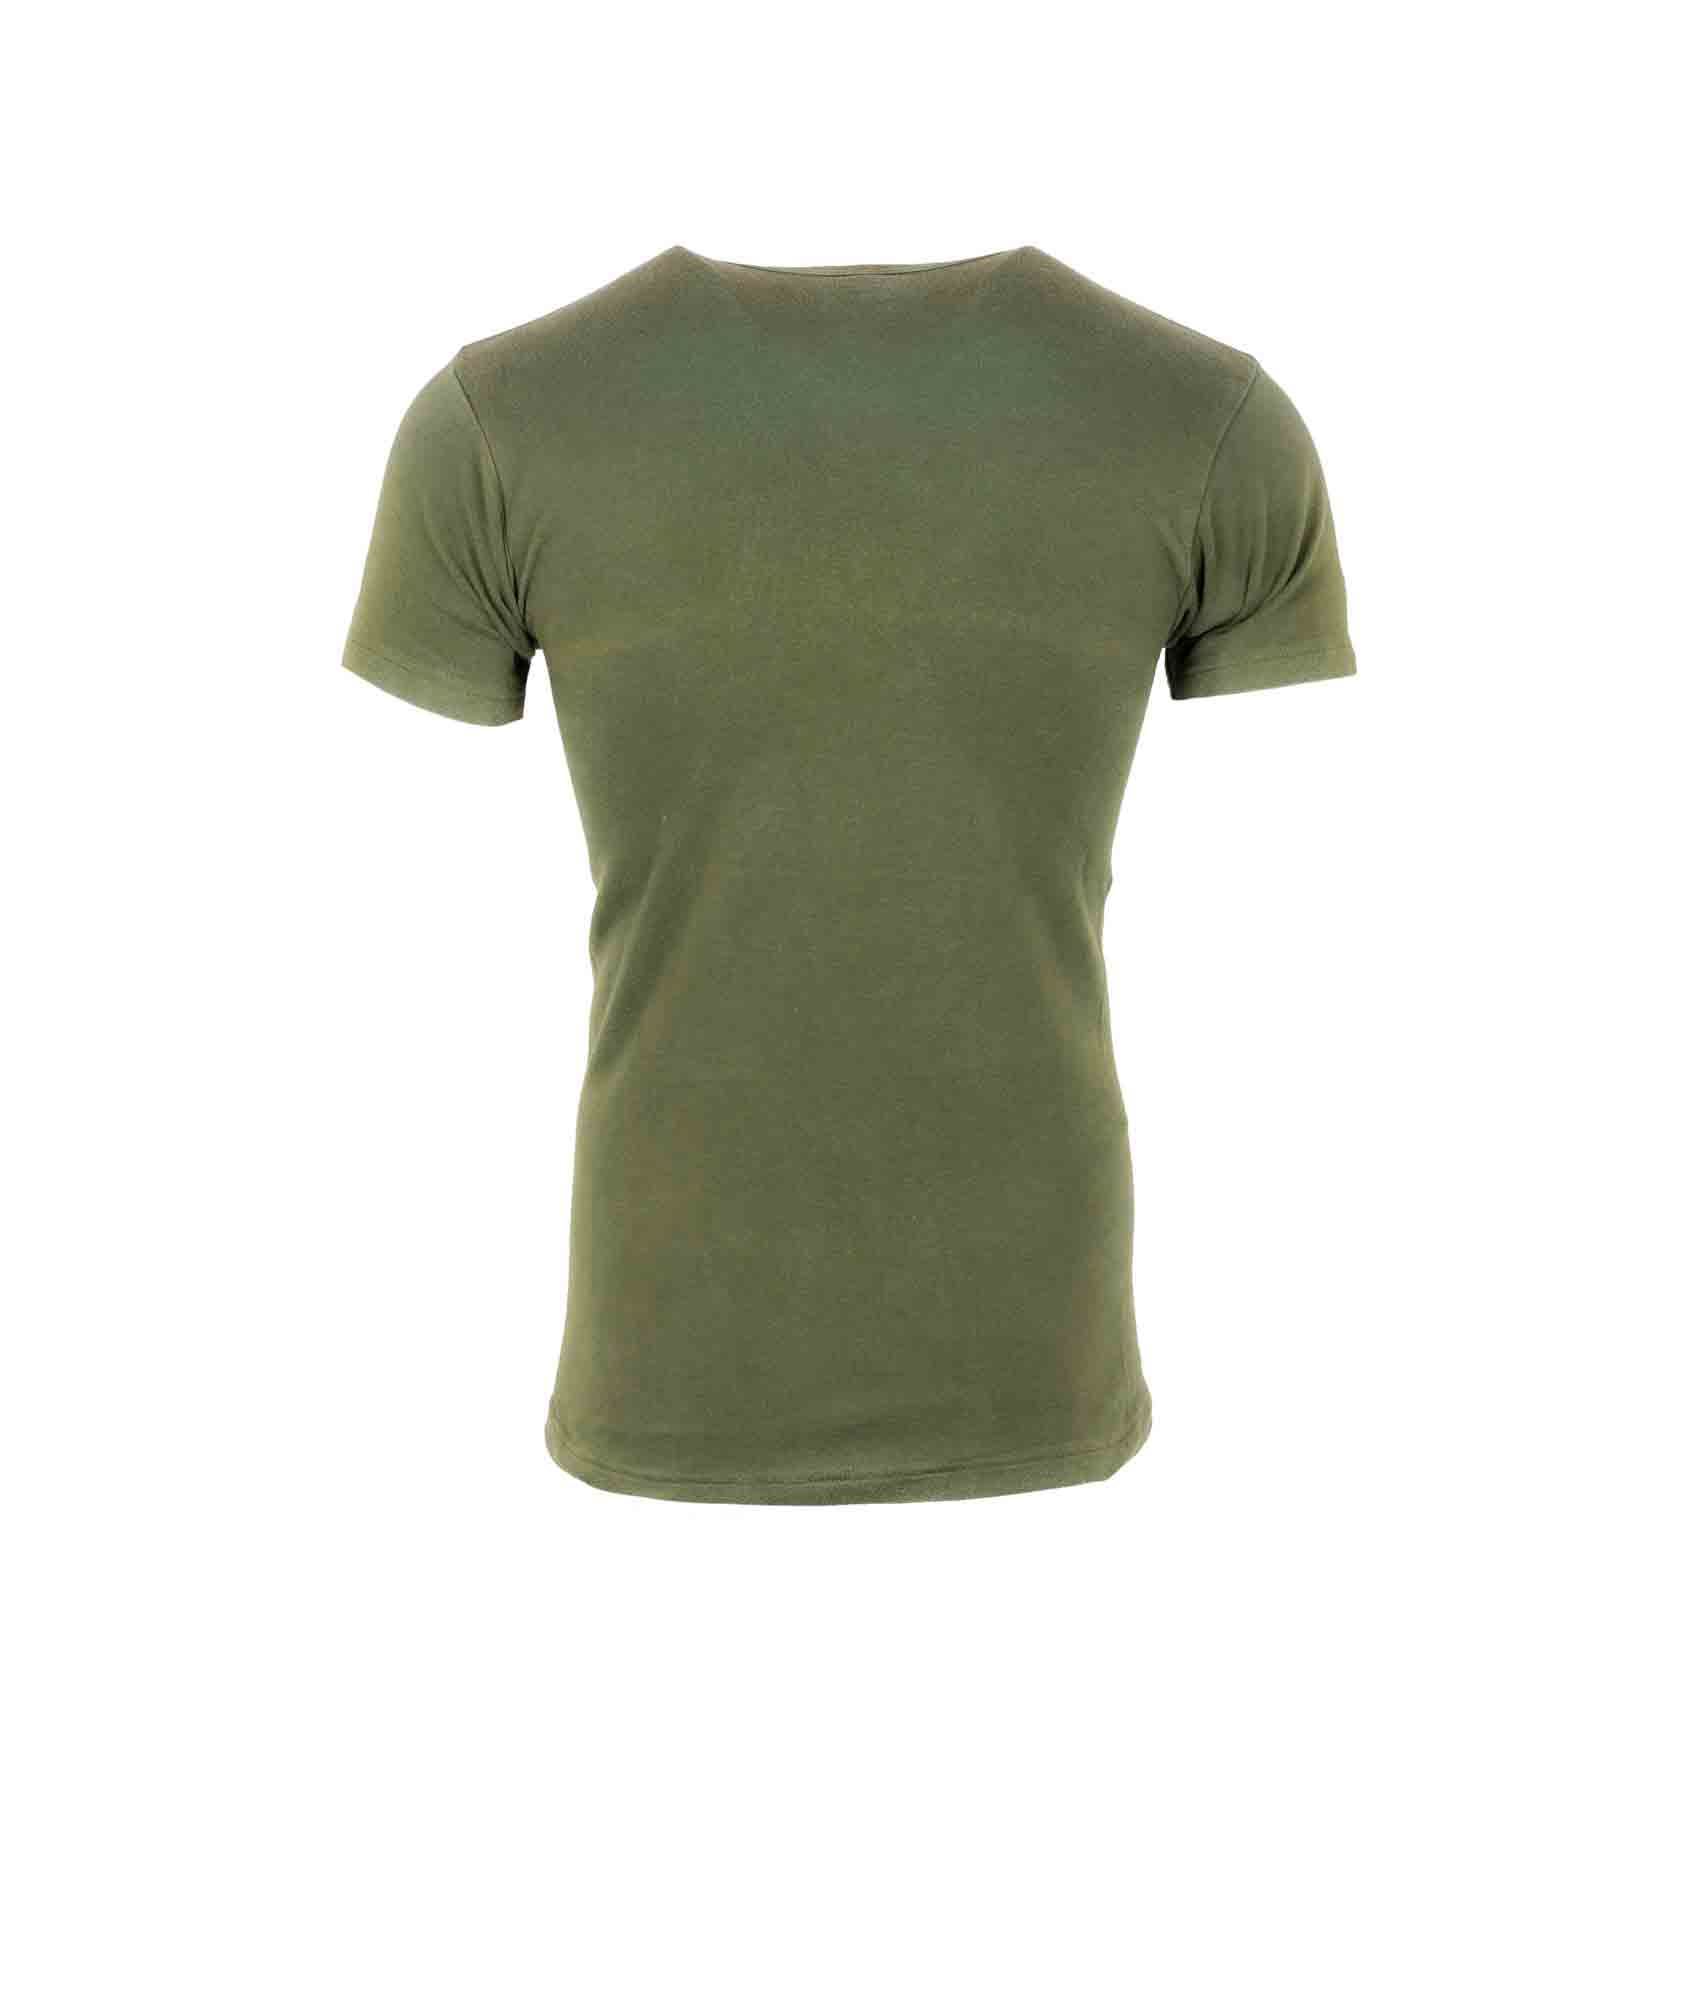 Køb militær T-shirts | Billige T-shirts til mænd 417